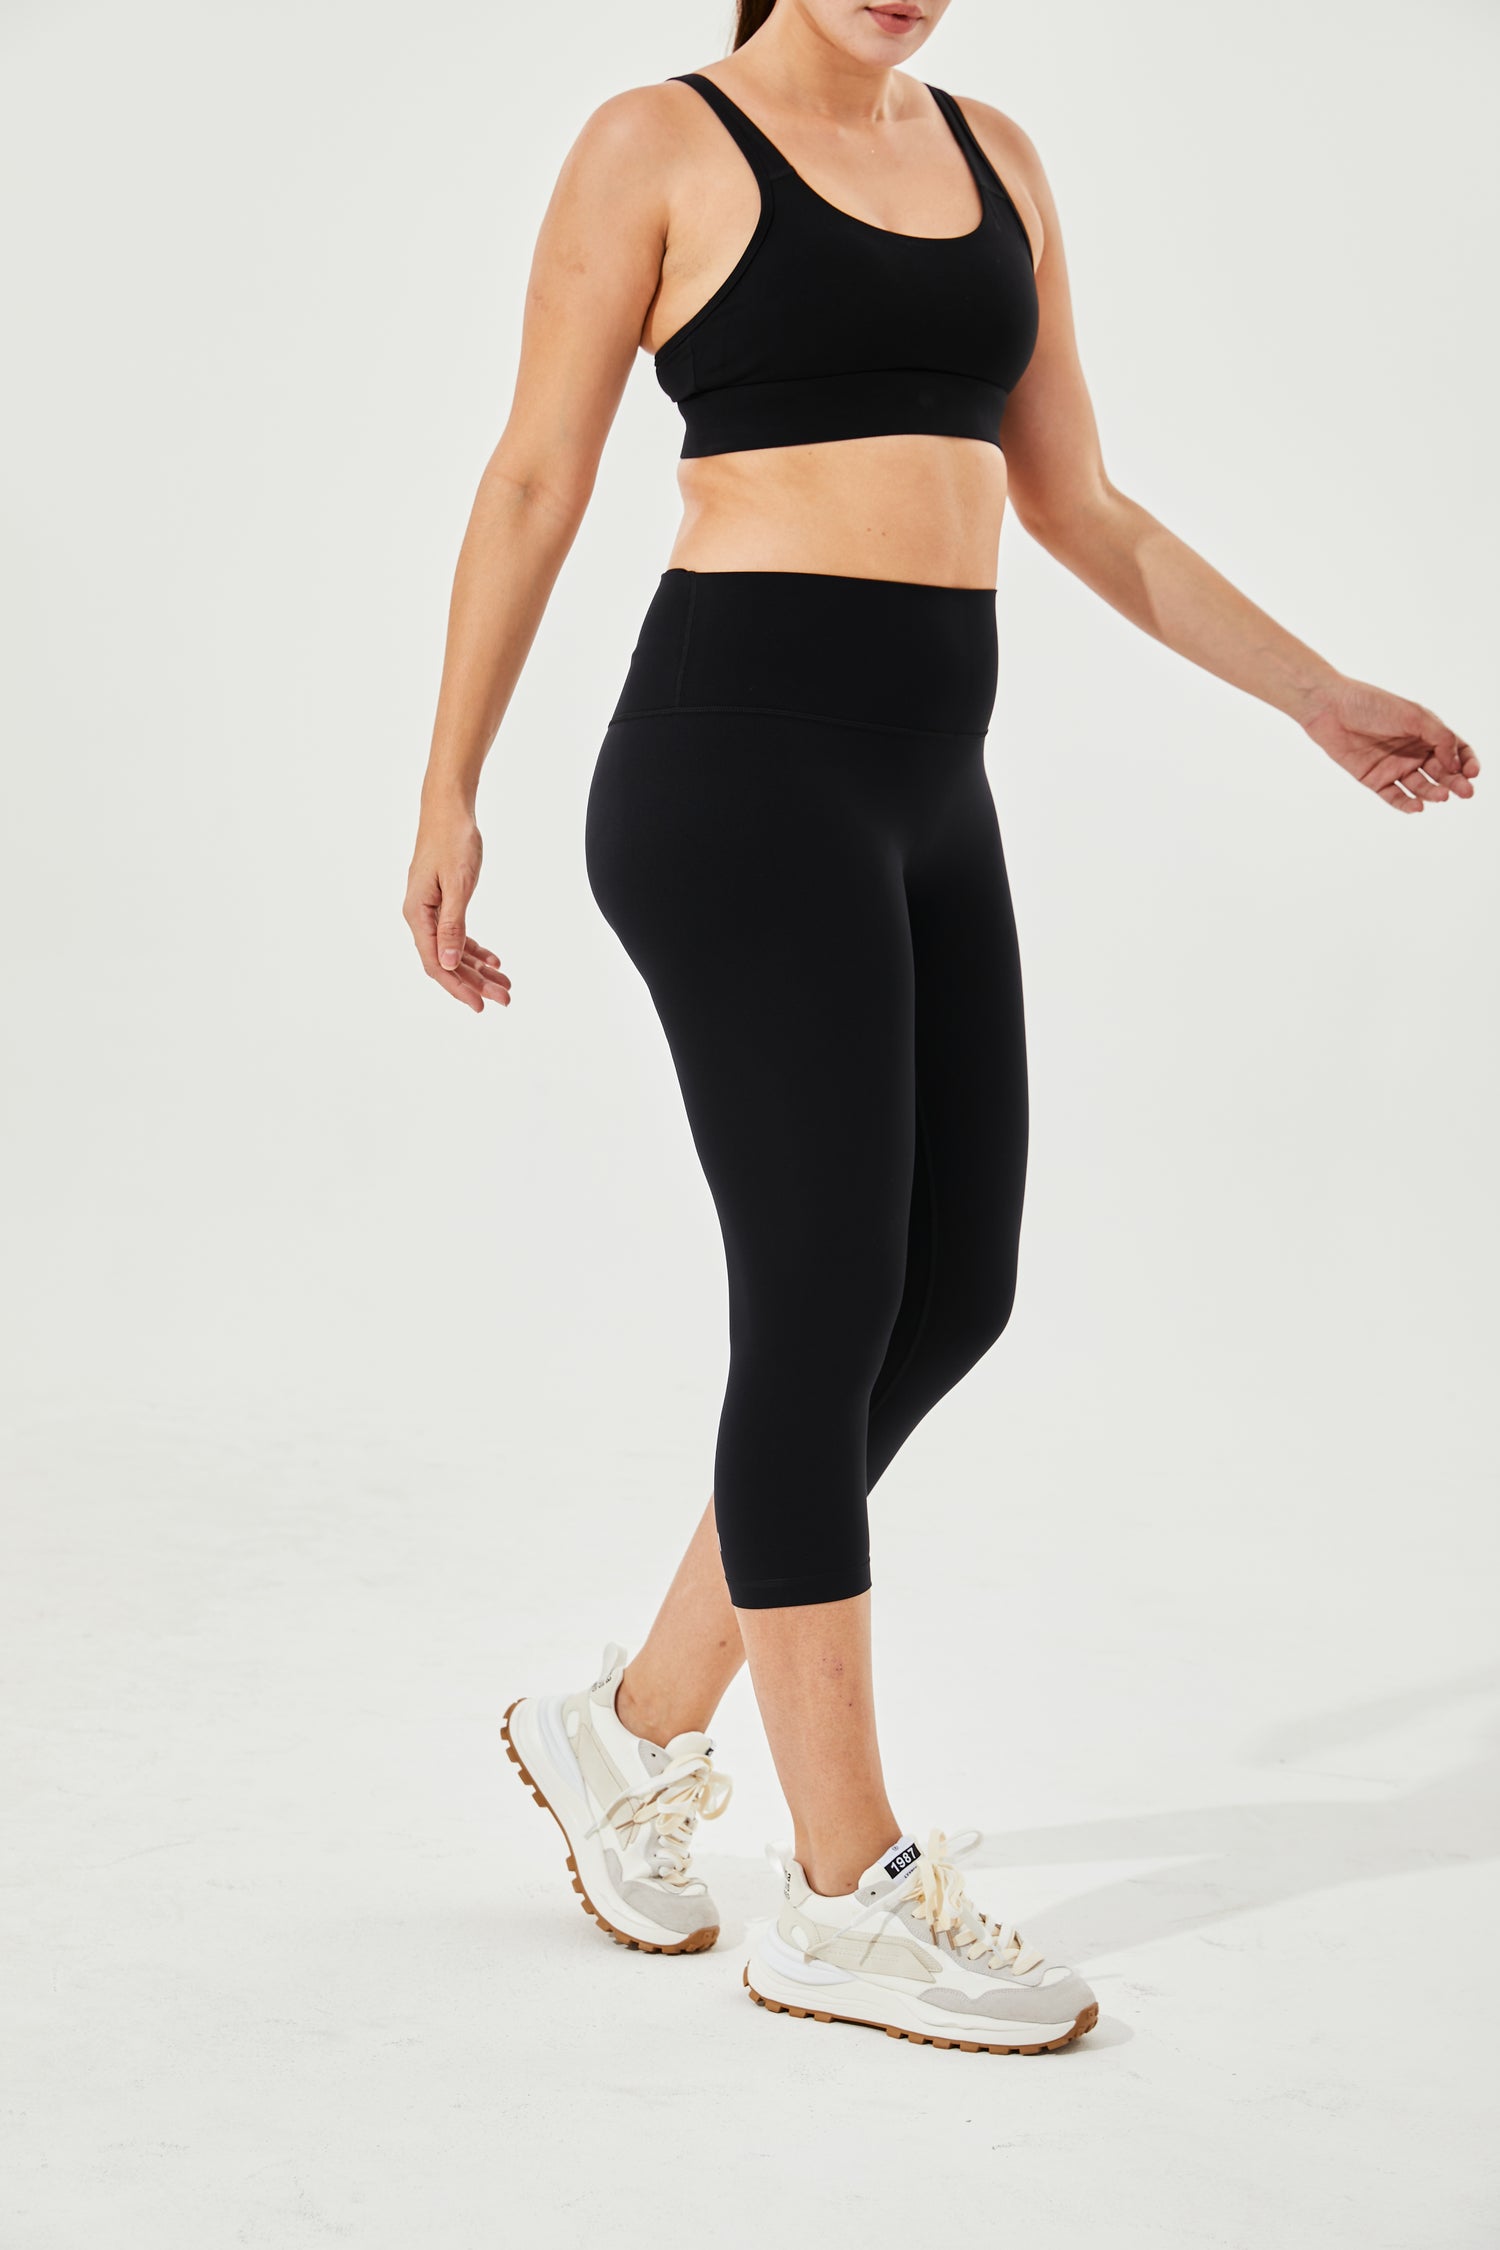 Leggings For Girls, black leggings designed for running – Gymwearmovement